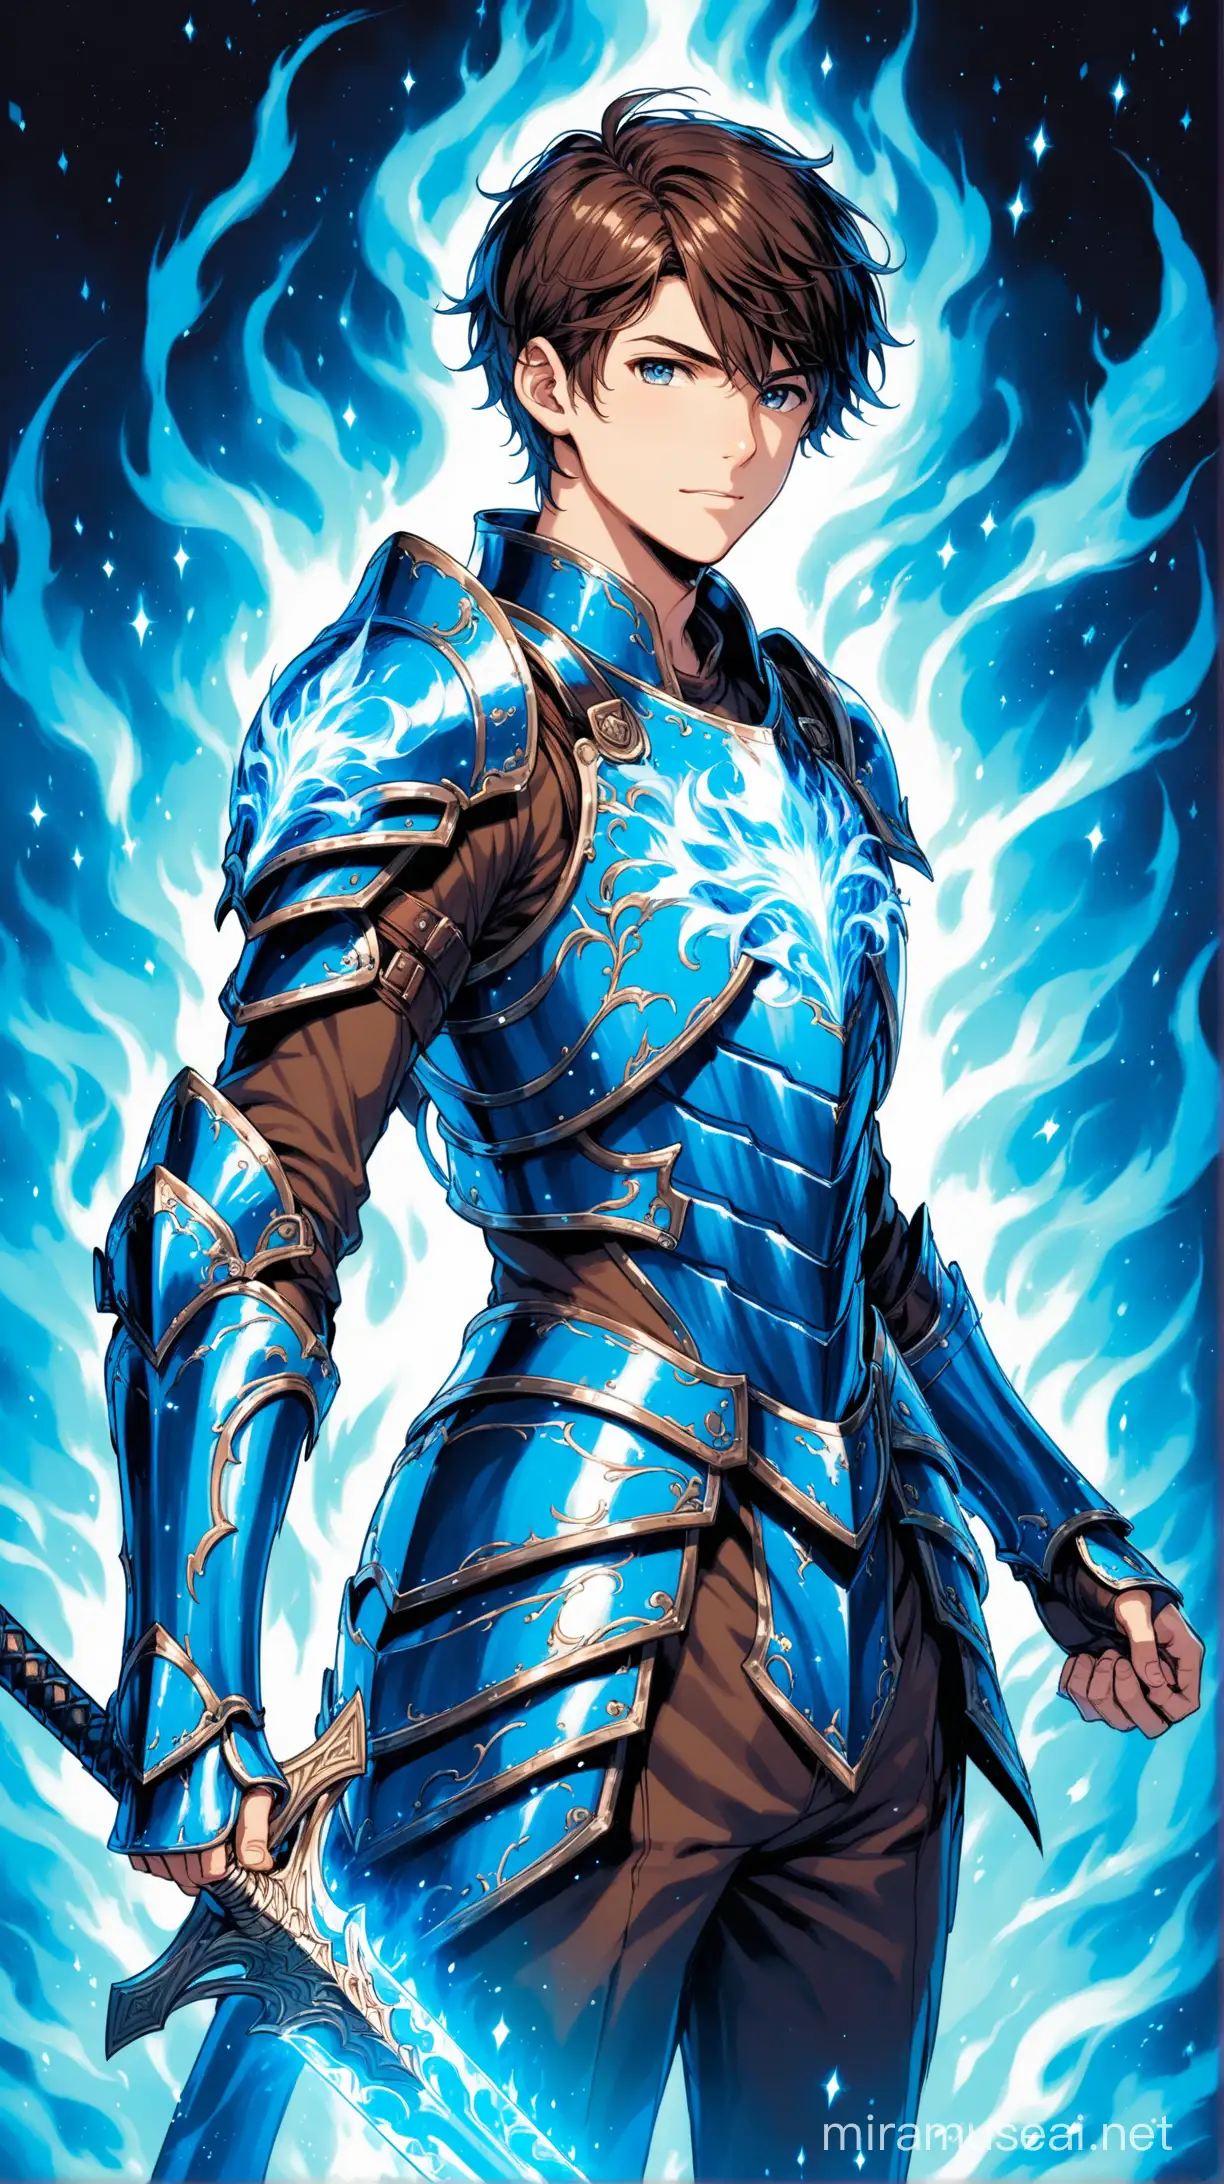 jeune homme d'une vingtaine d'année, cheveux brun court, avec une épée longue de feu bleu, dans une armure étincellante en métal a refelt bleu